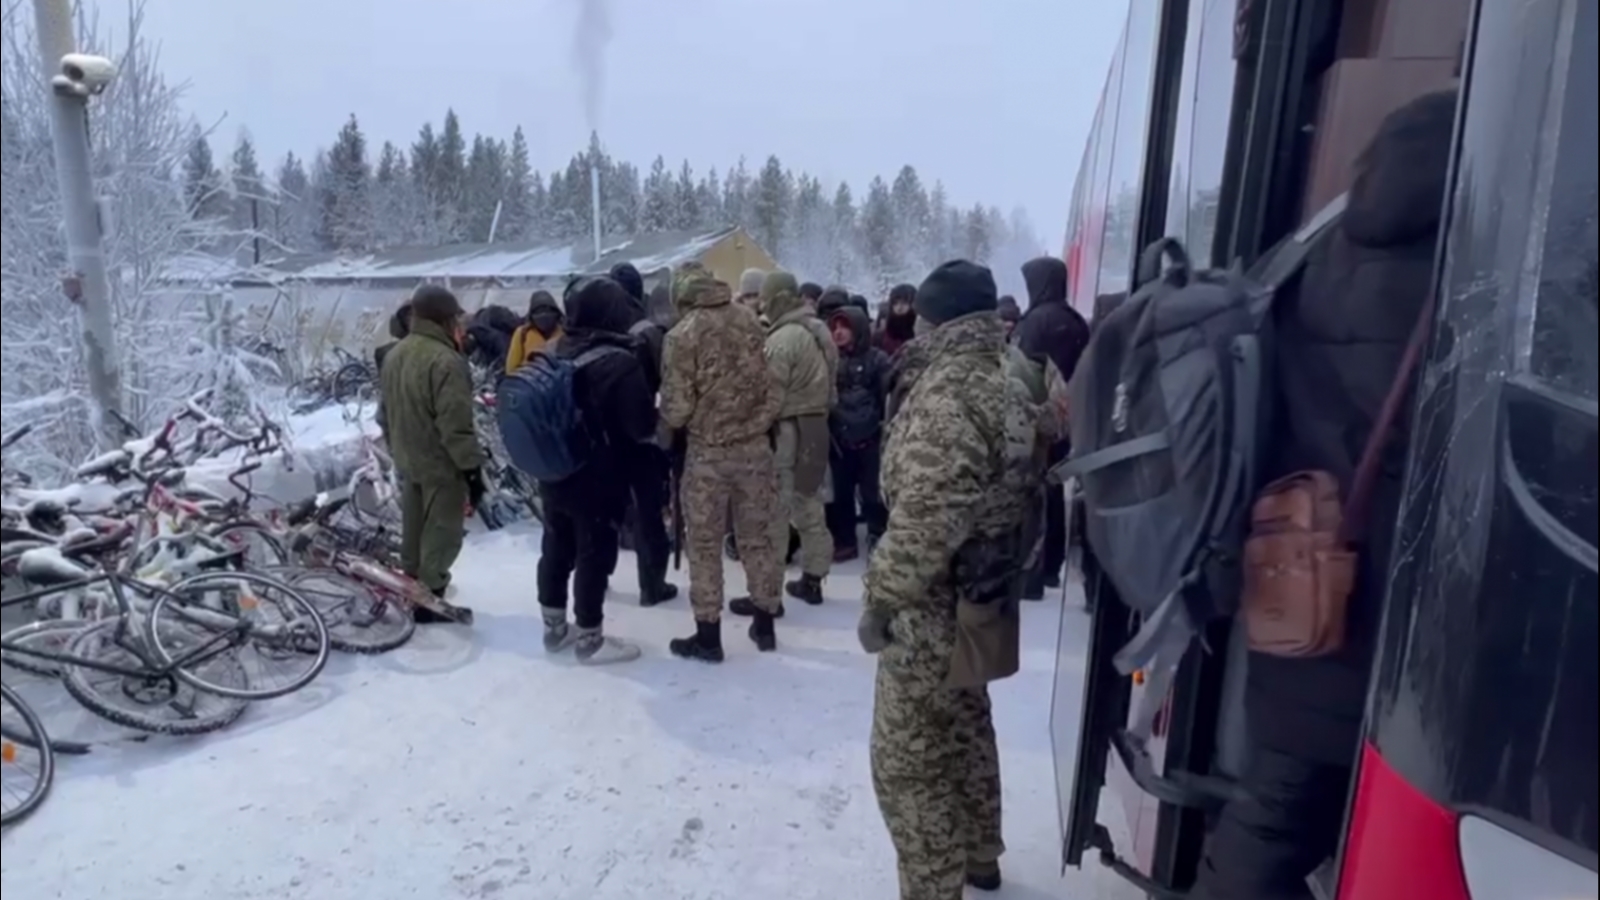 Губернатор рассказал, куда денут беженцев на границе с Финляндией [видео]